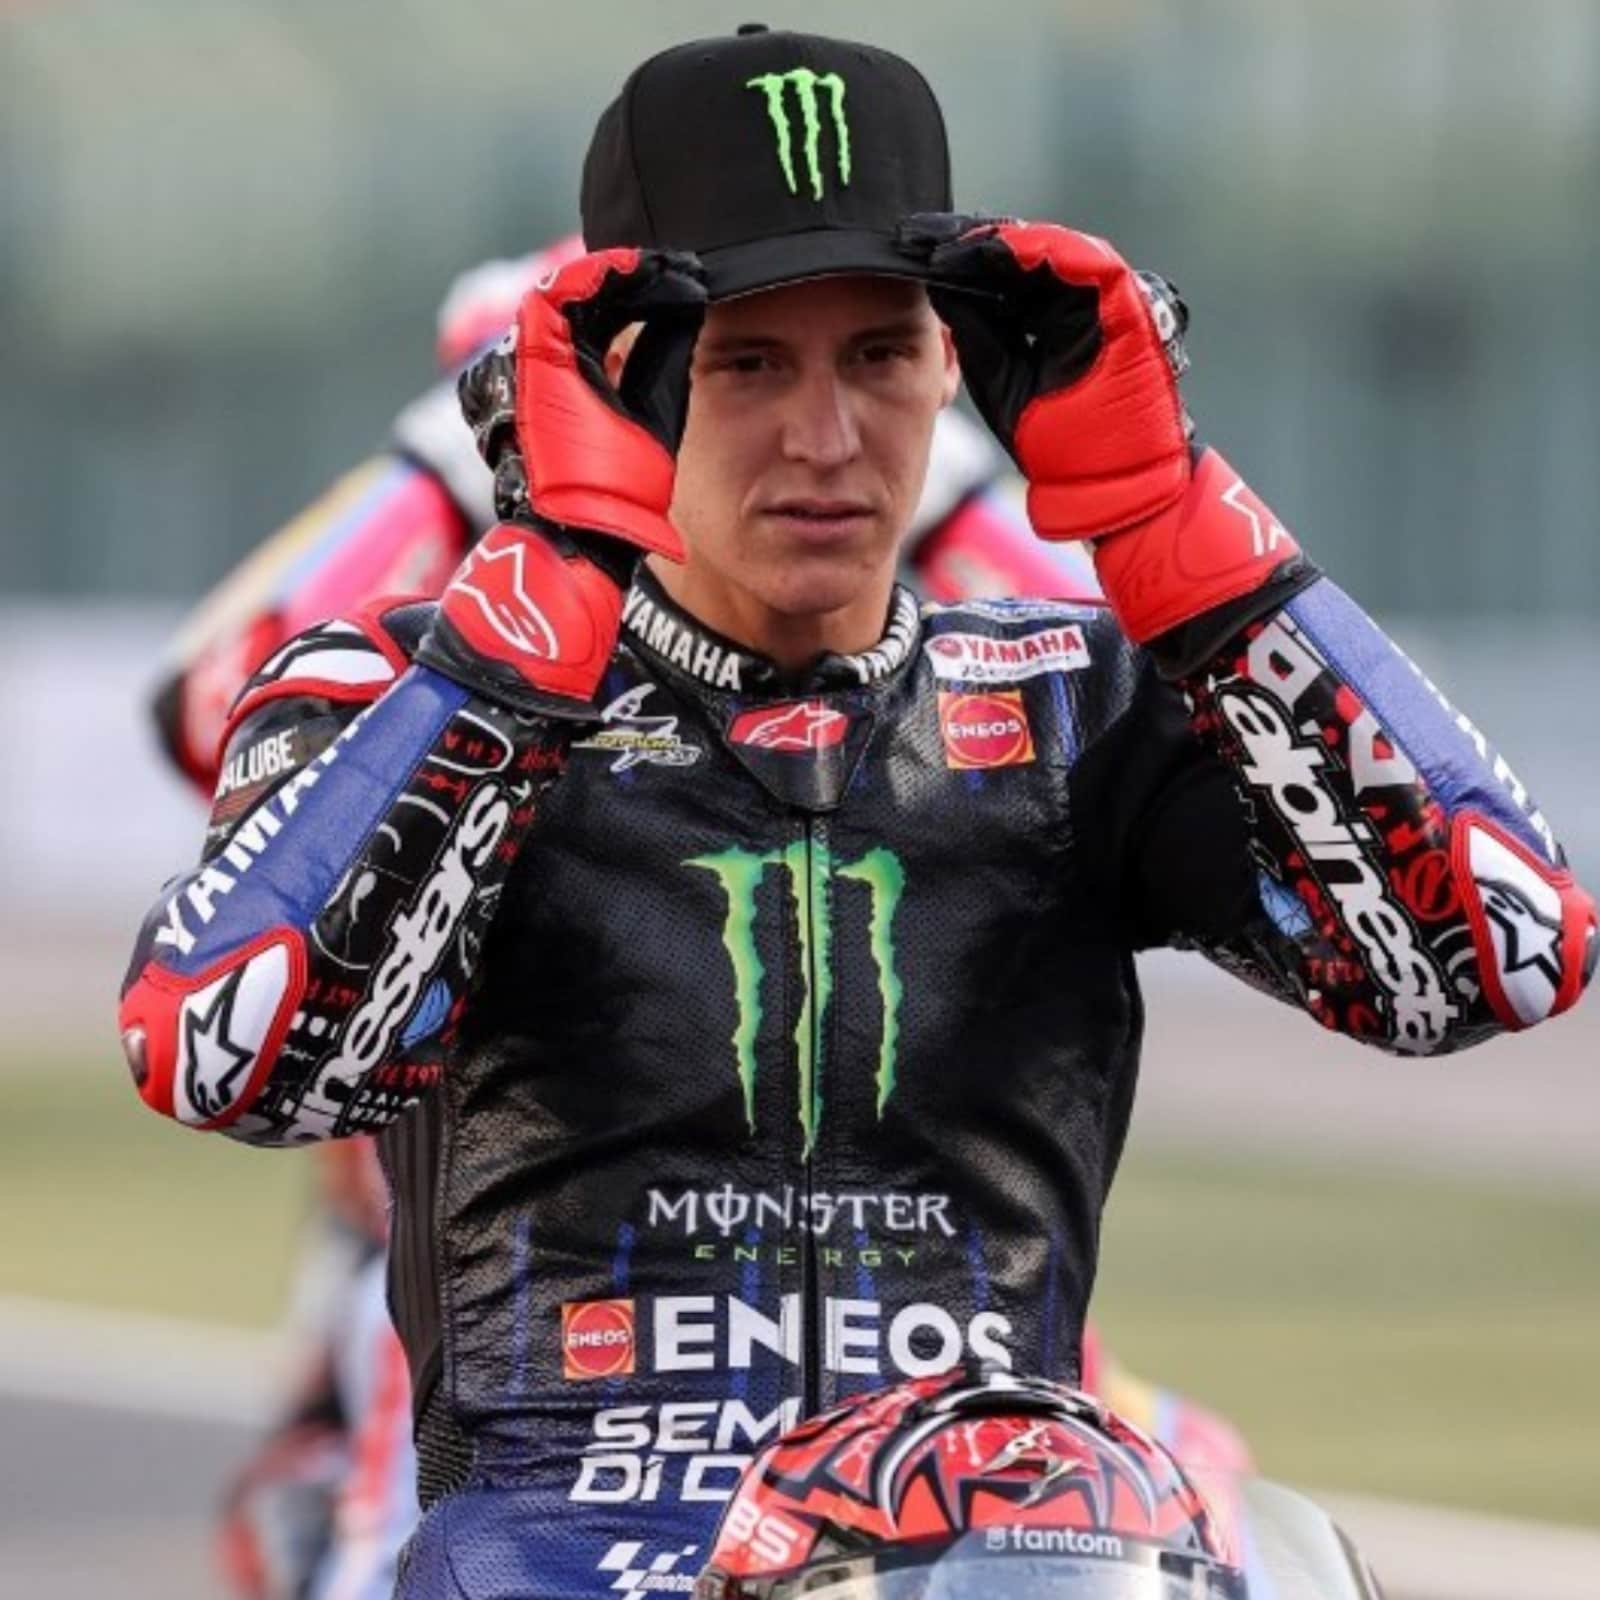 MotoGP: Fabio Quartararo Eyes Succeeding Marc Marquez as King of 